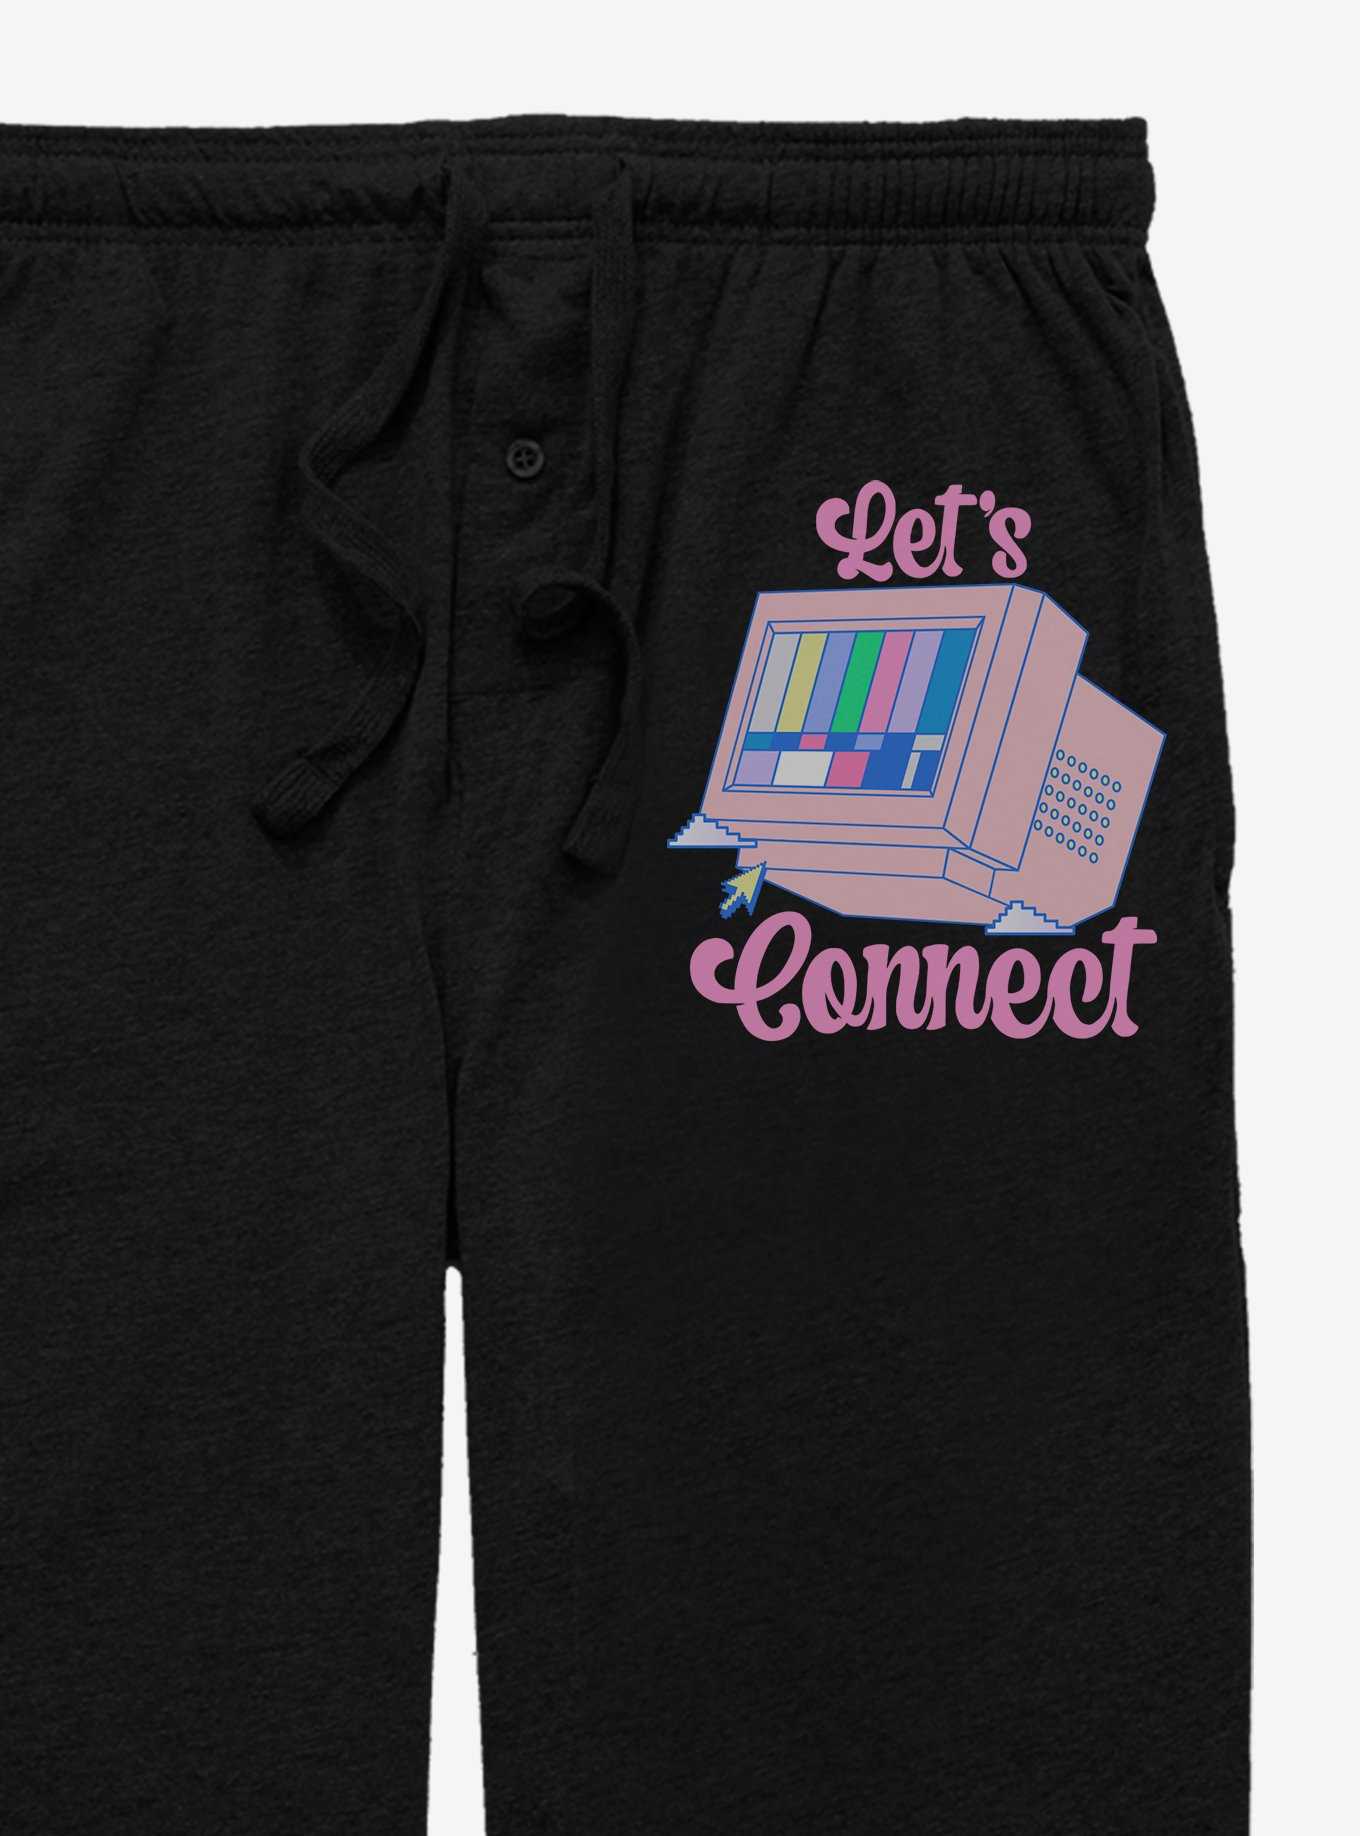 Let's Connect Pajama Pants, , hi-res